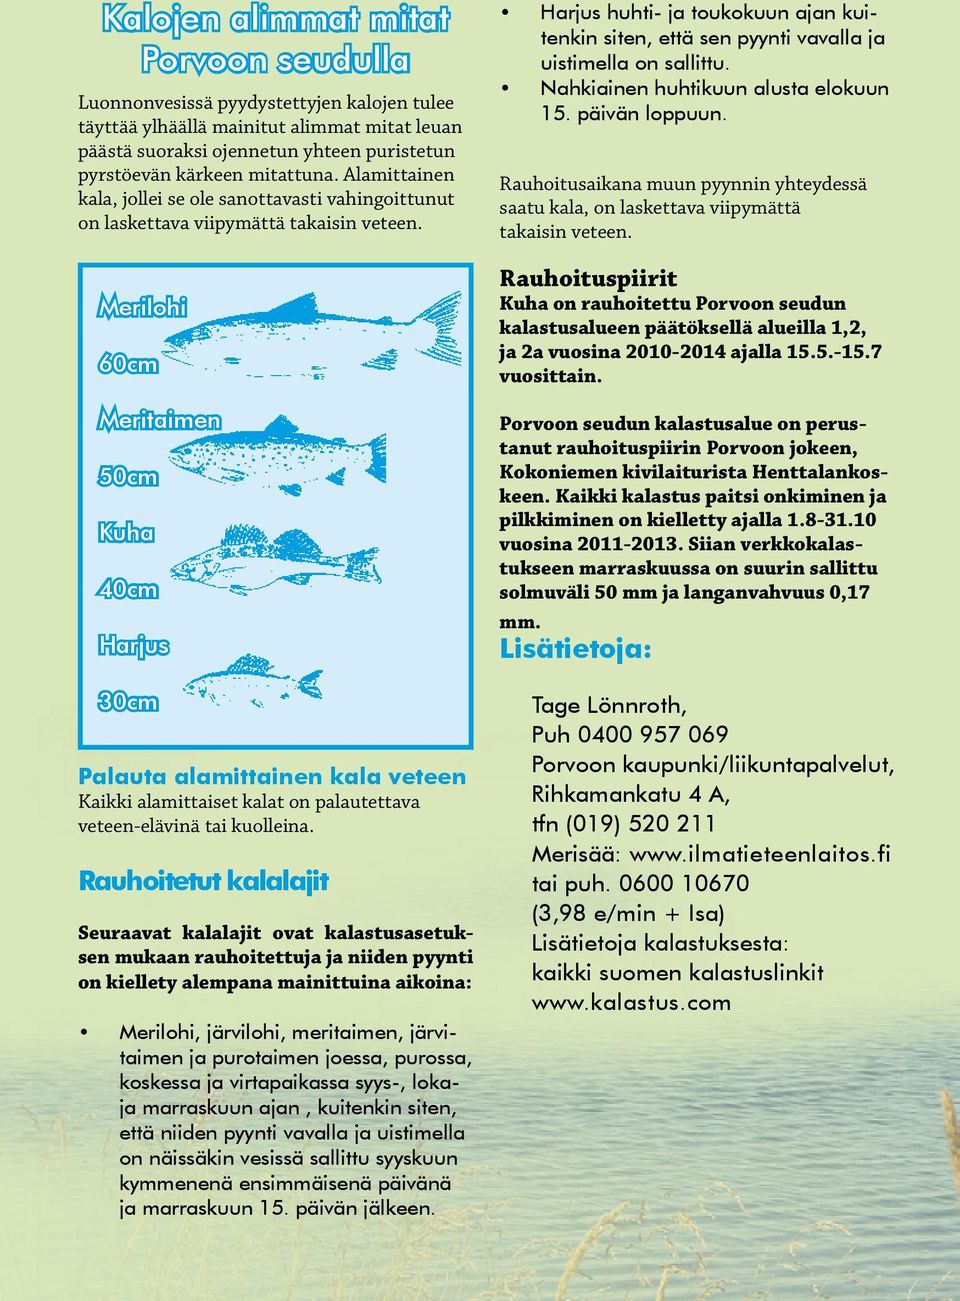 Merilohi 60cm Meritaimen 50cm Kuha 40cm Harjus 30cm Palauta alamittainen kala veteen Kaikki alamittaiset kalat on palautettava veteen-elävinä tai kuolleina.